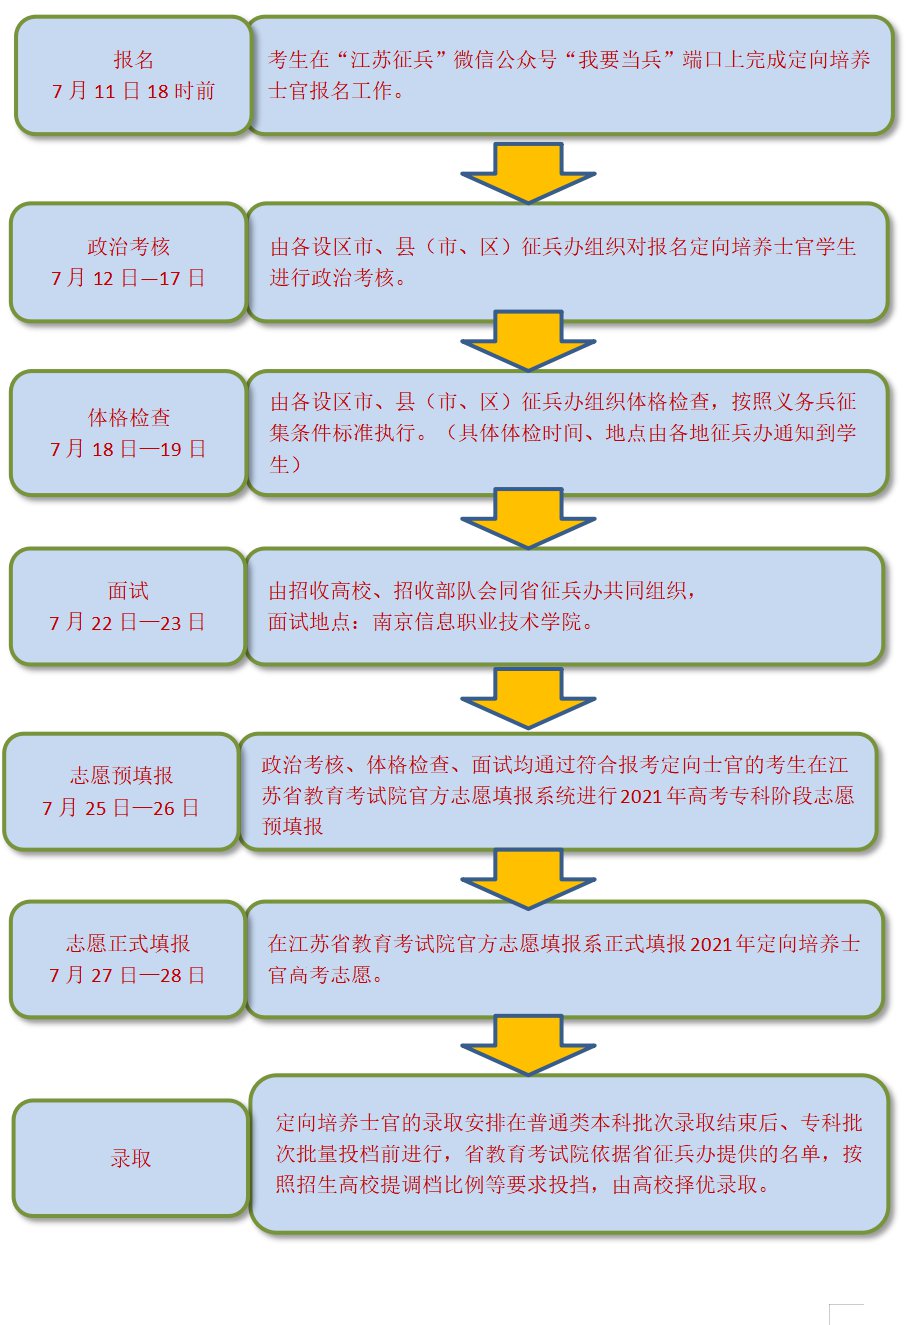 2021年江苏省定向培养士官报考流程(附图)